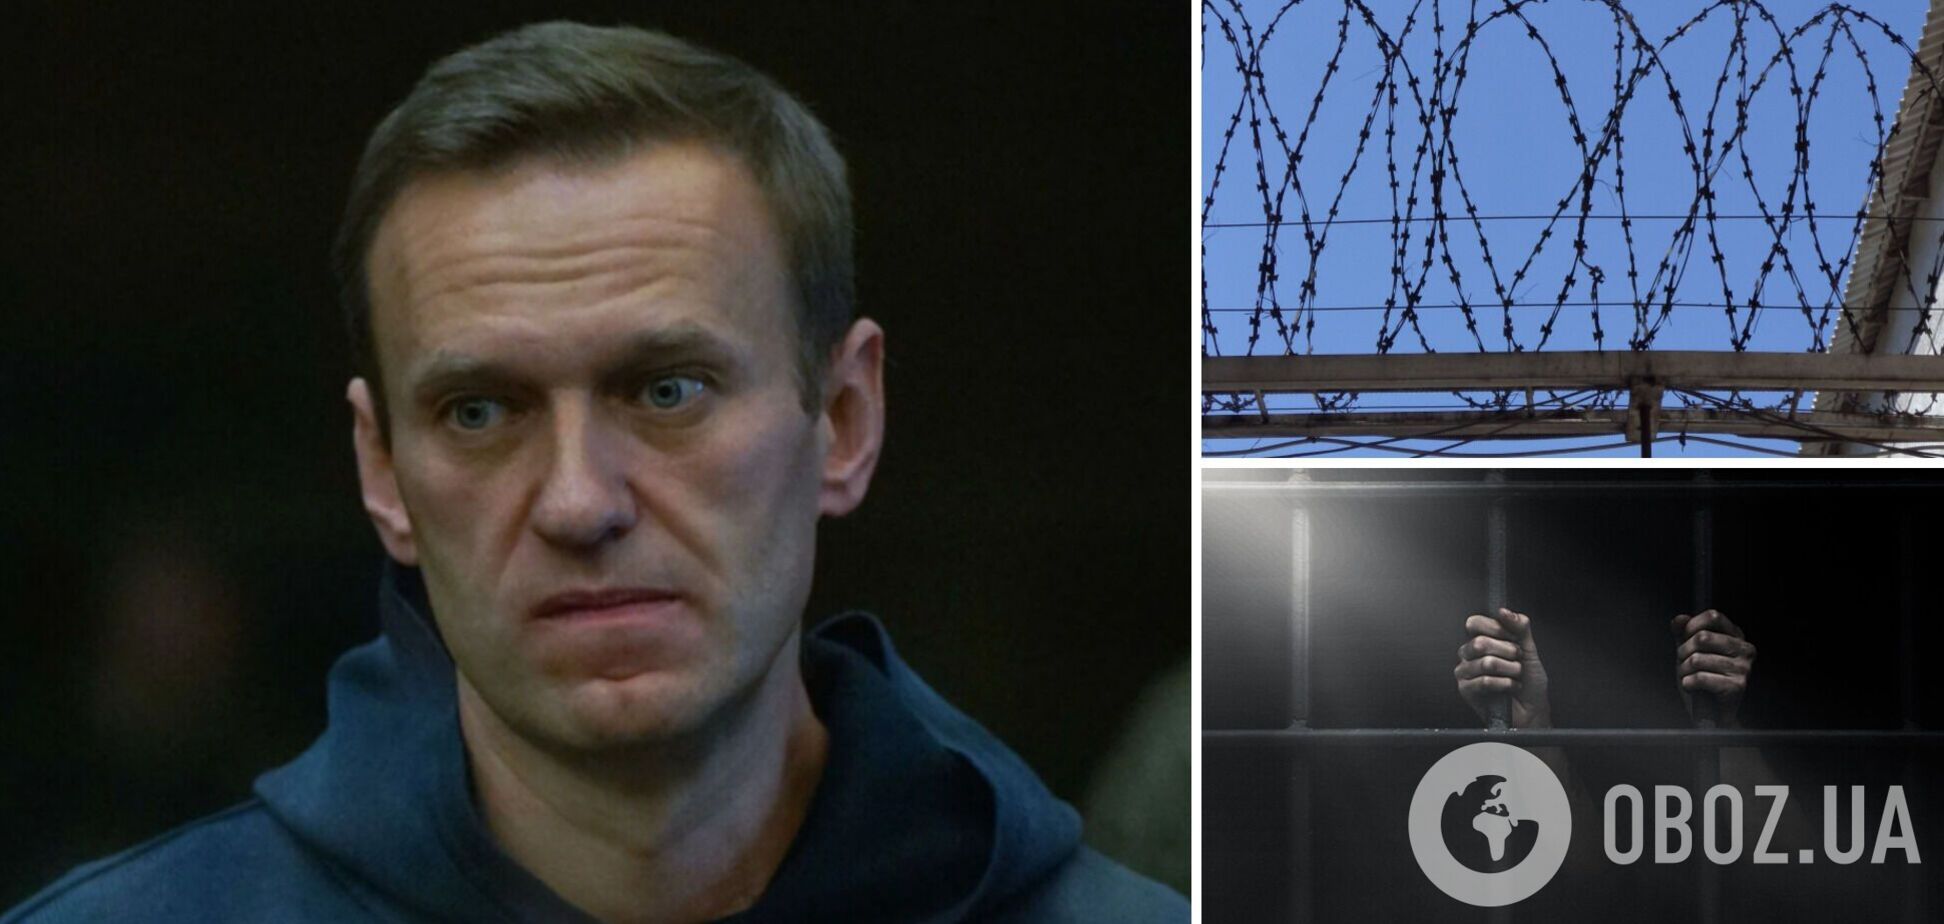 Соратники Навального не могут найти его ни в одном из московских СИЗО: что произошло и куда мог исчезнуть